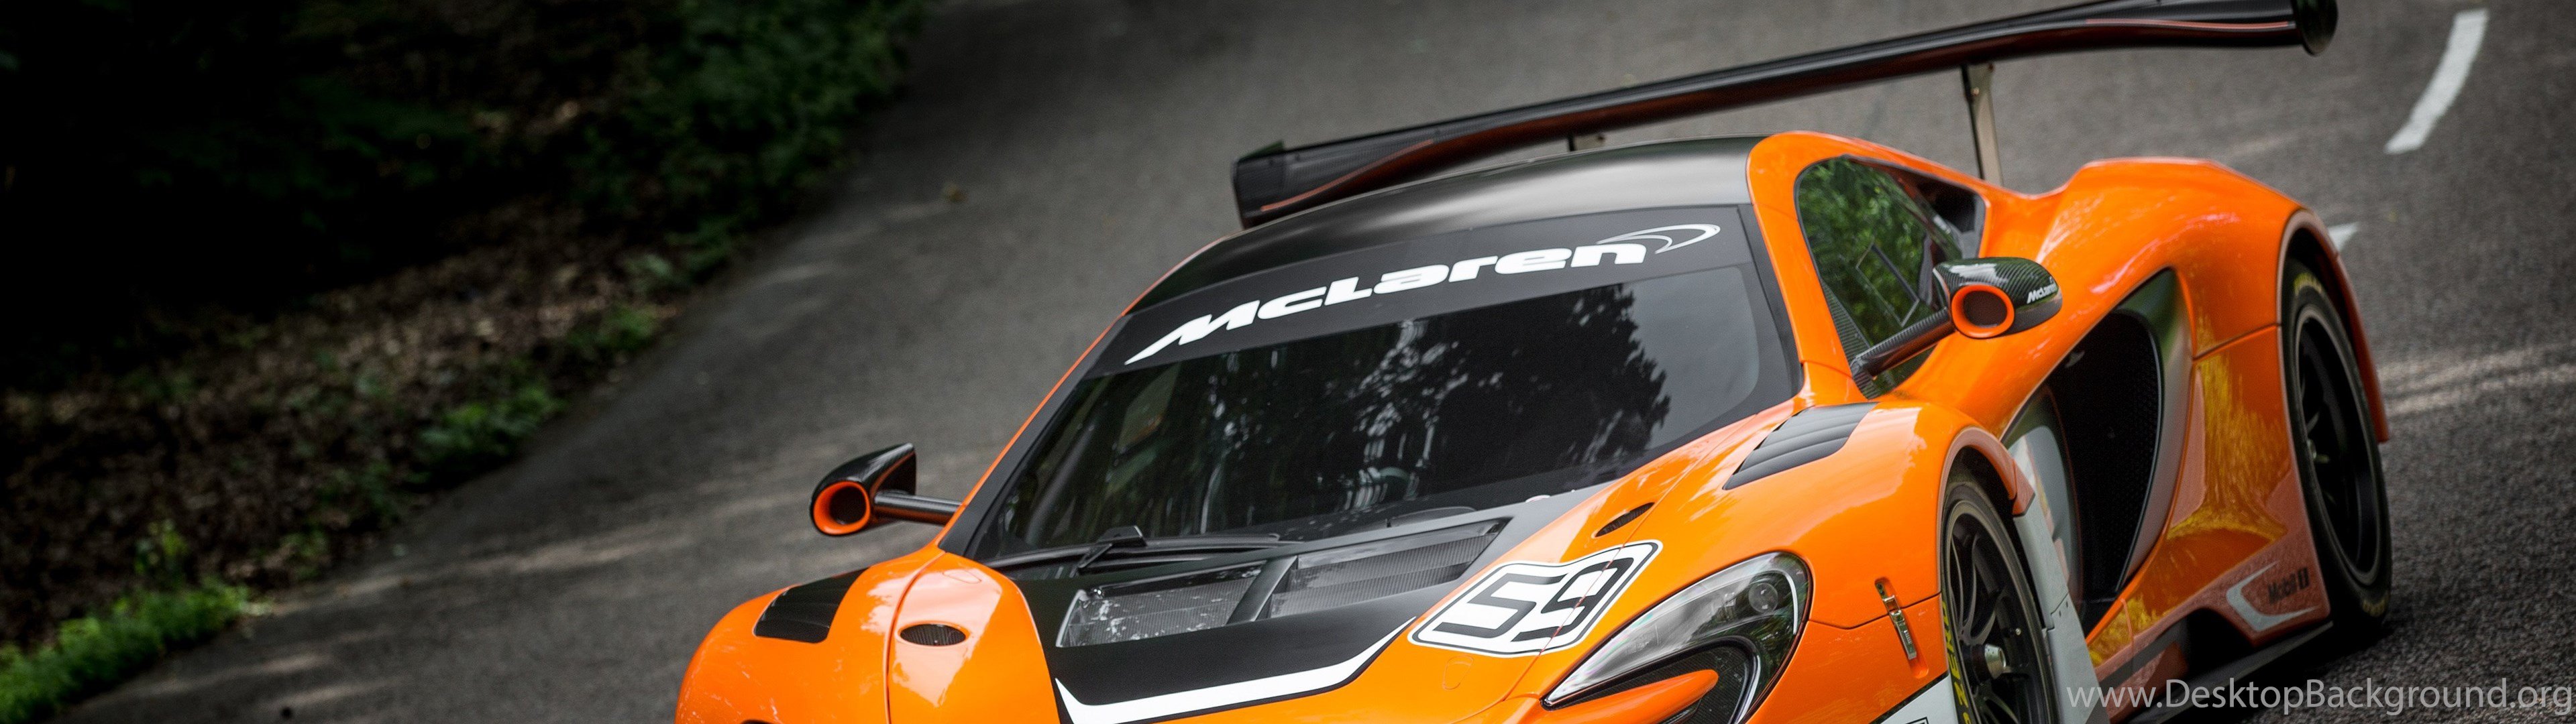 McLaren 650S GT3 HD Wallpapers Desktop Background 3840x1080